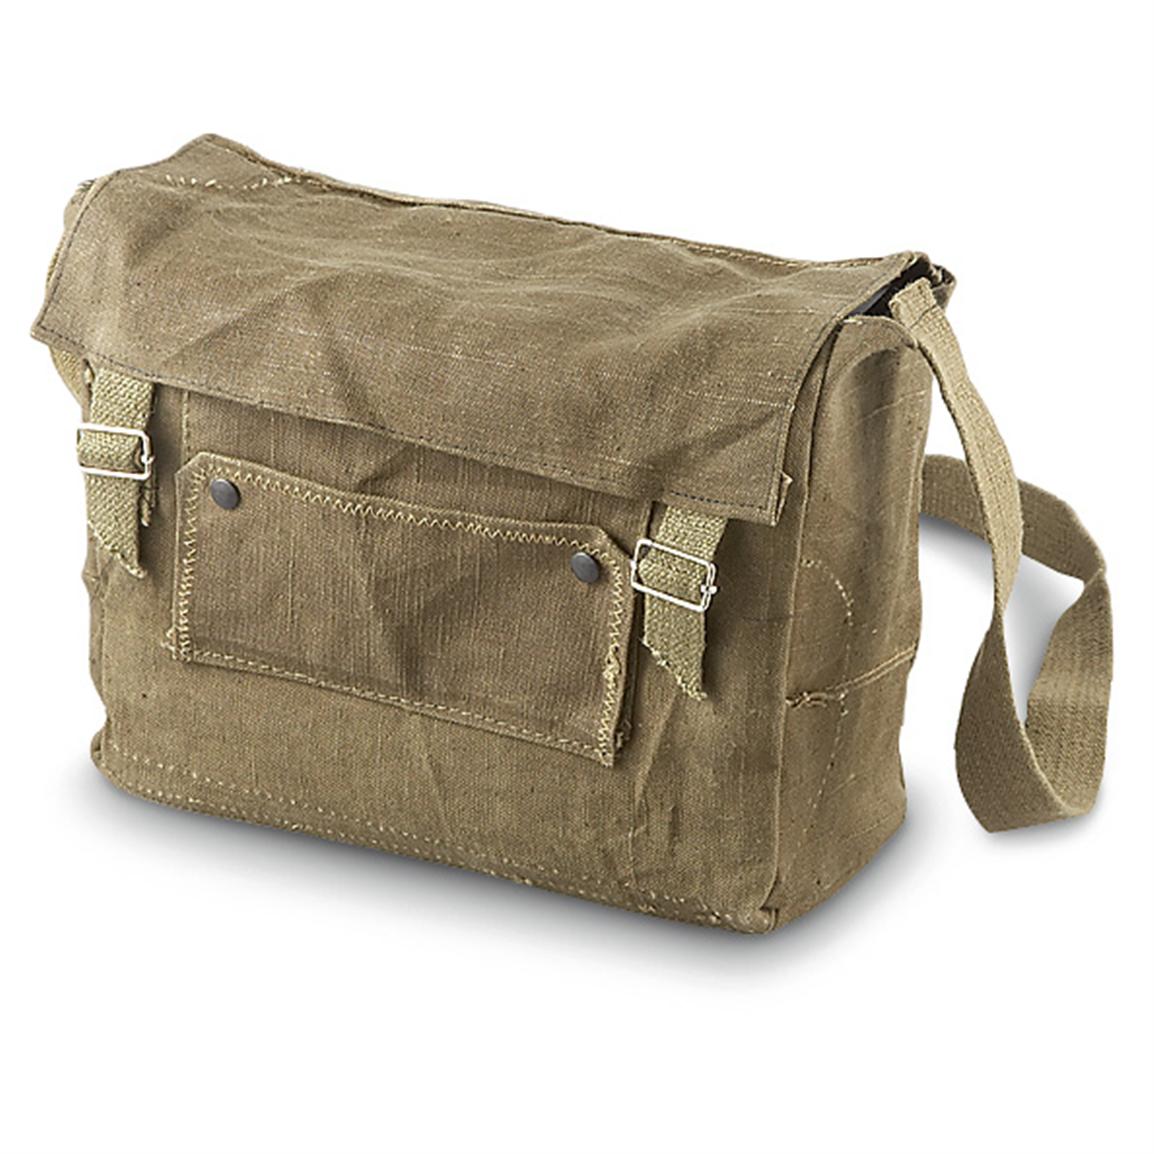 Used Italian Military Shoulder Bag, Olive Drab - 150275, Shoulder ...